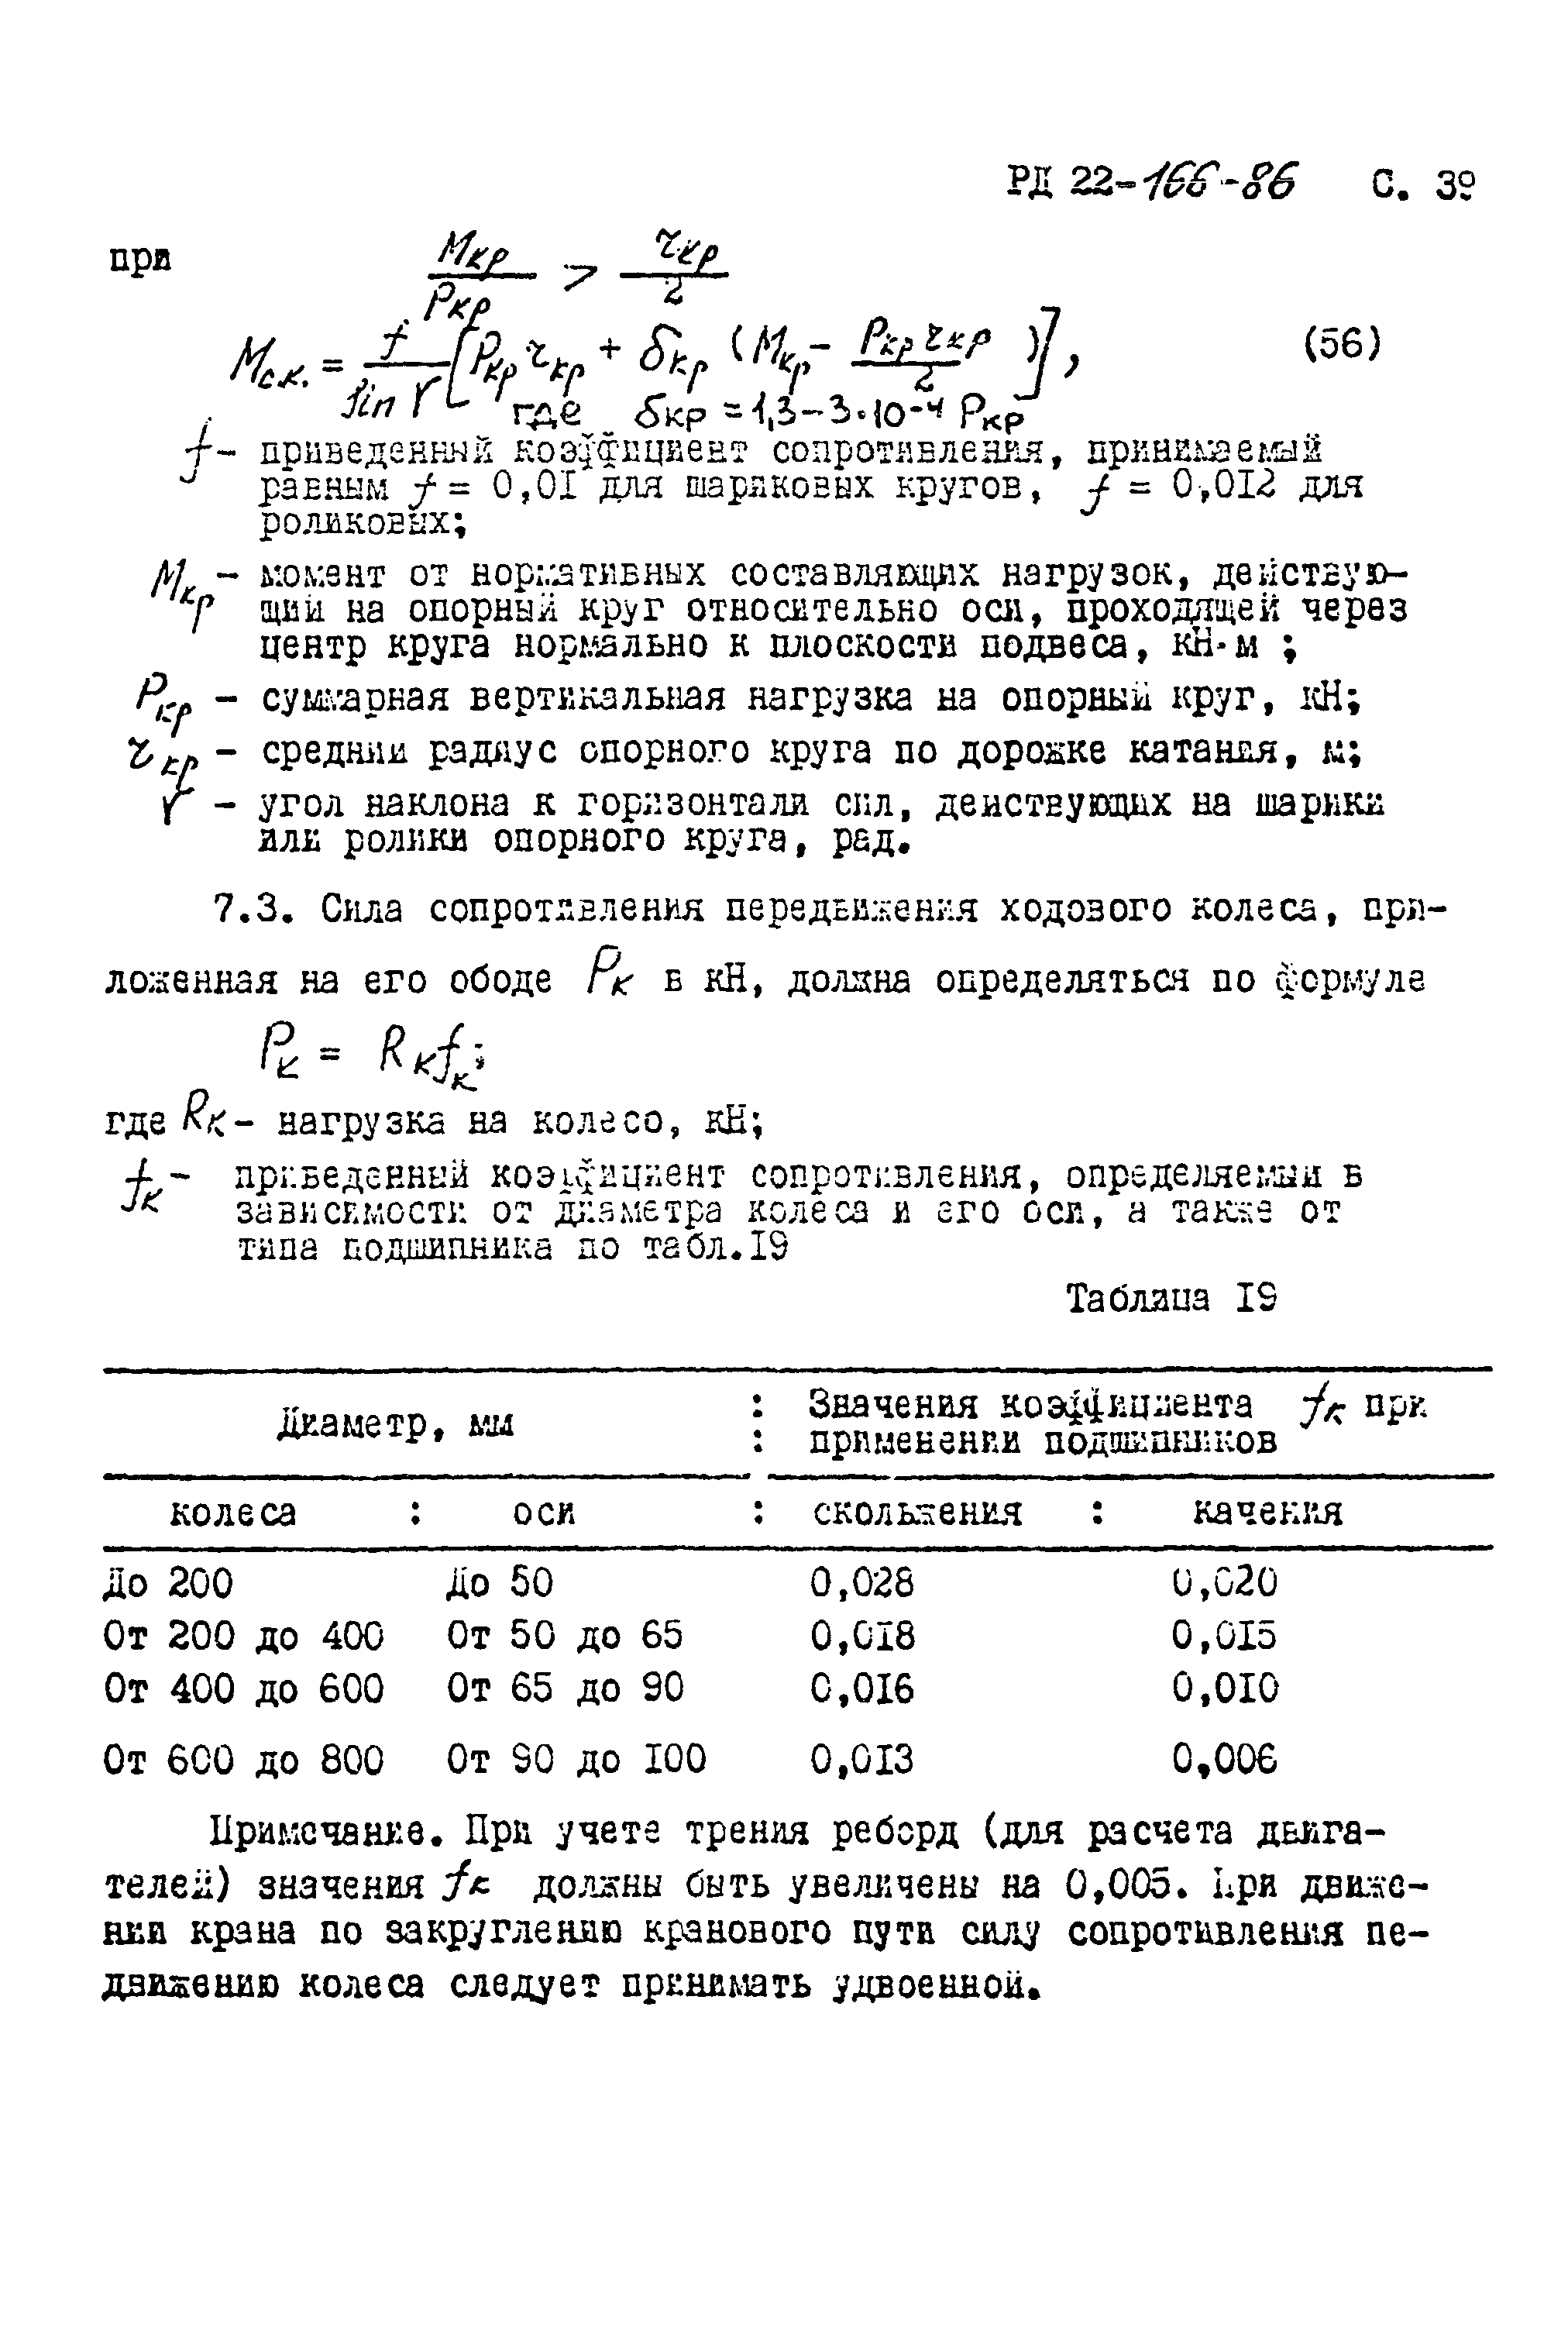 РД 22-166-86